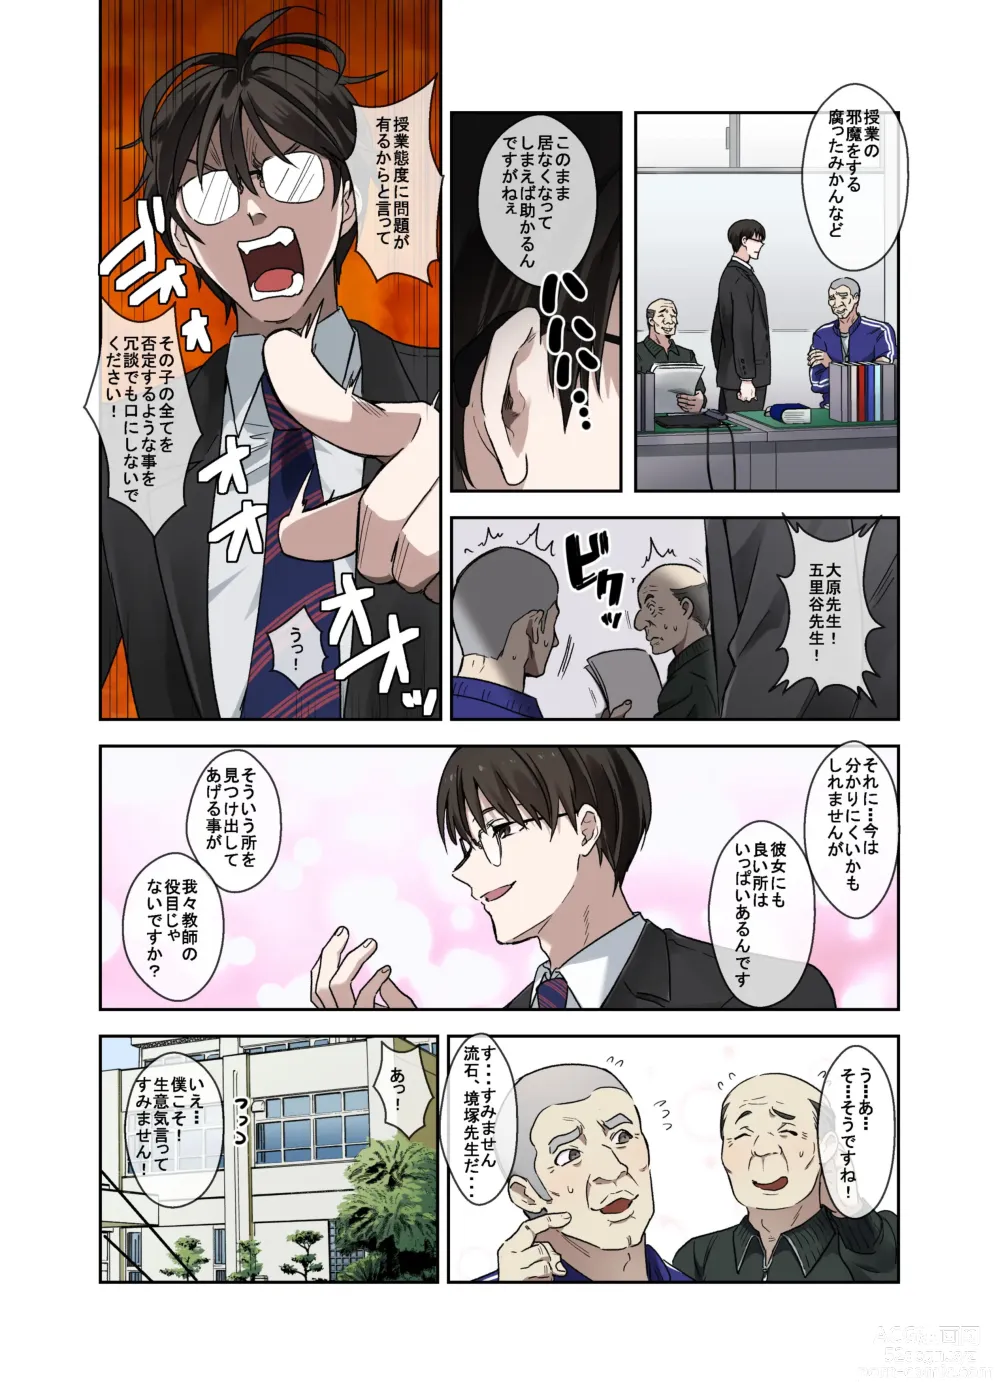 Page 5 of doujinshi 問題生徒はセックスで従順なメスになるので、じっくり躾始めました。